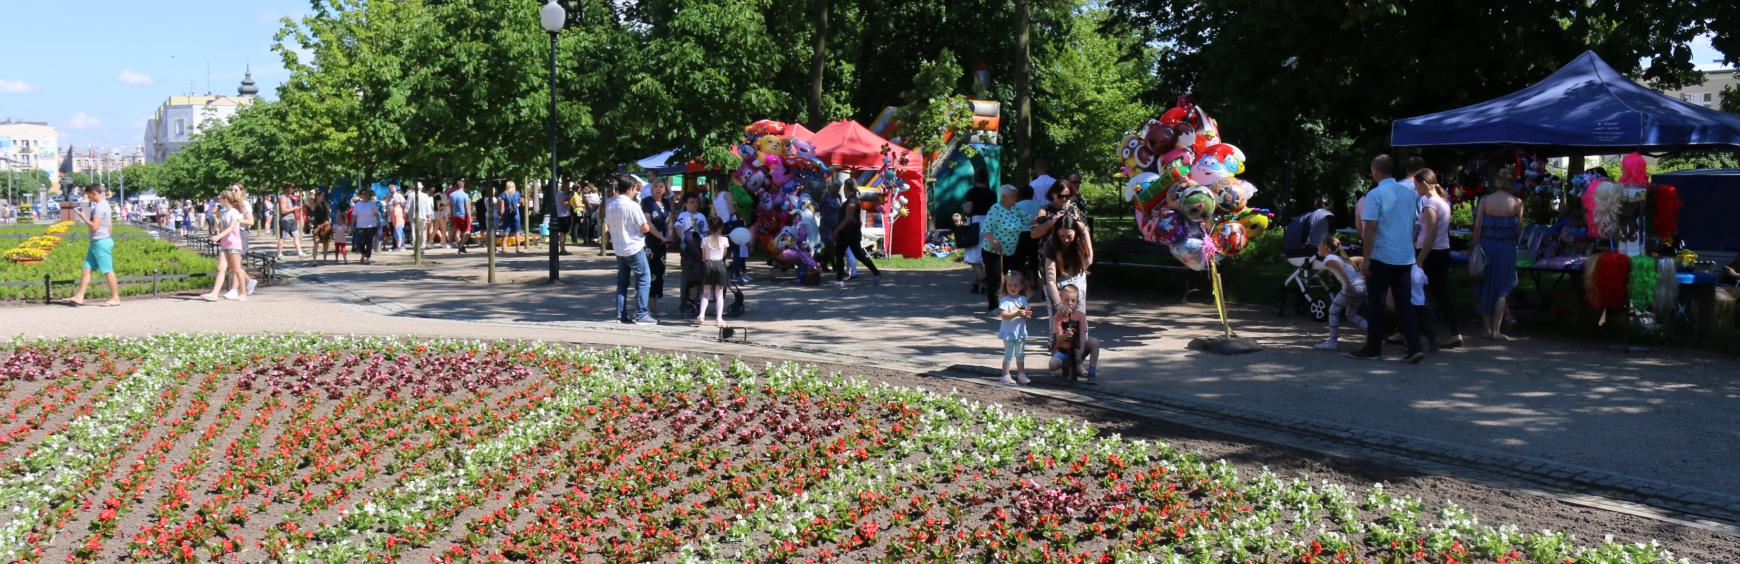 Mławski park podczas miejskiego Dnia Dziecka w 2019 roku